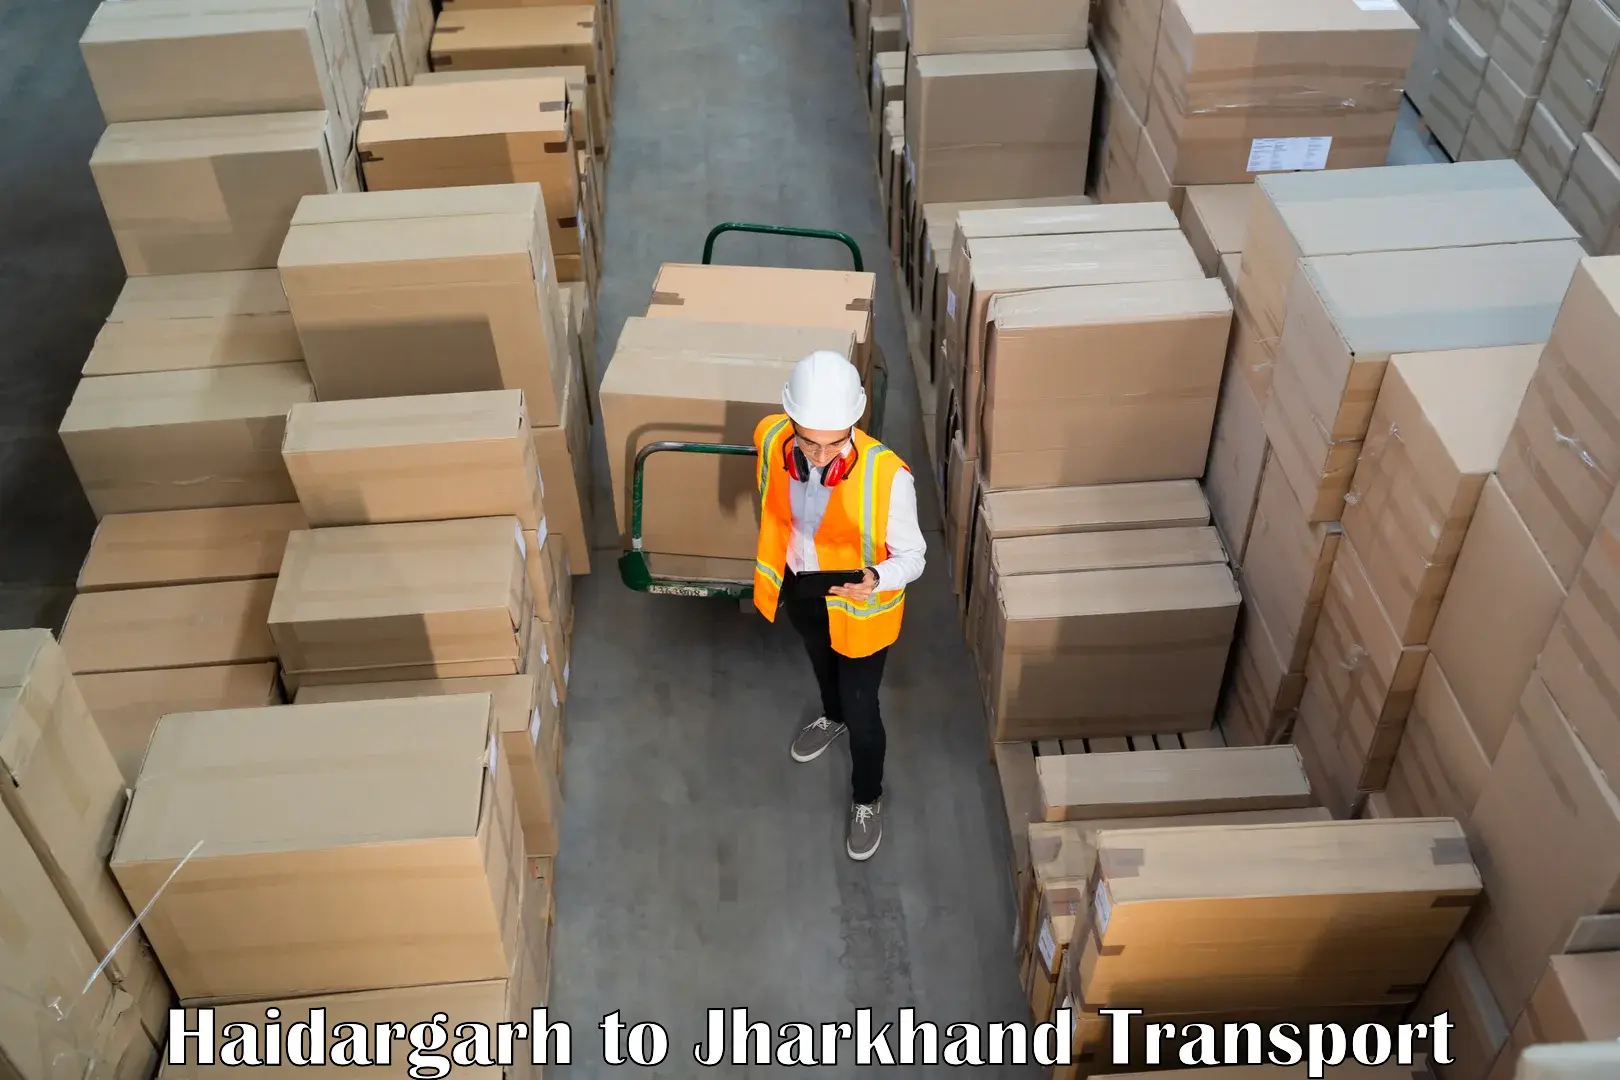 Truck transport companies in India Haidargarh to Chakradharpur